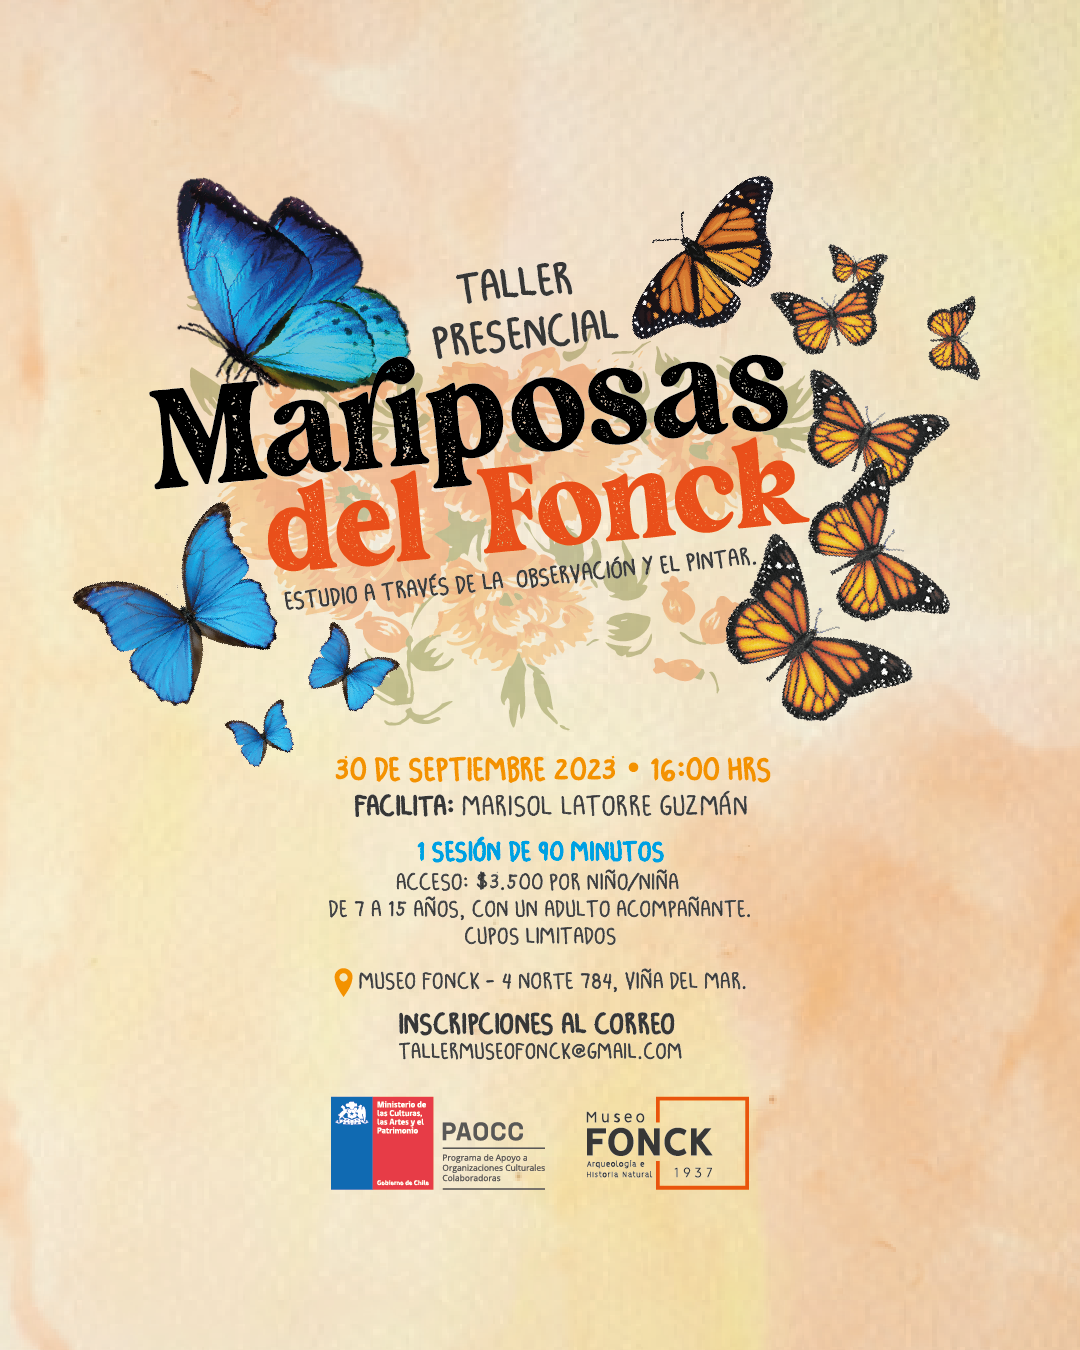 Mariposas del Fonck: Estudio a través de la observación y el pintar